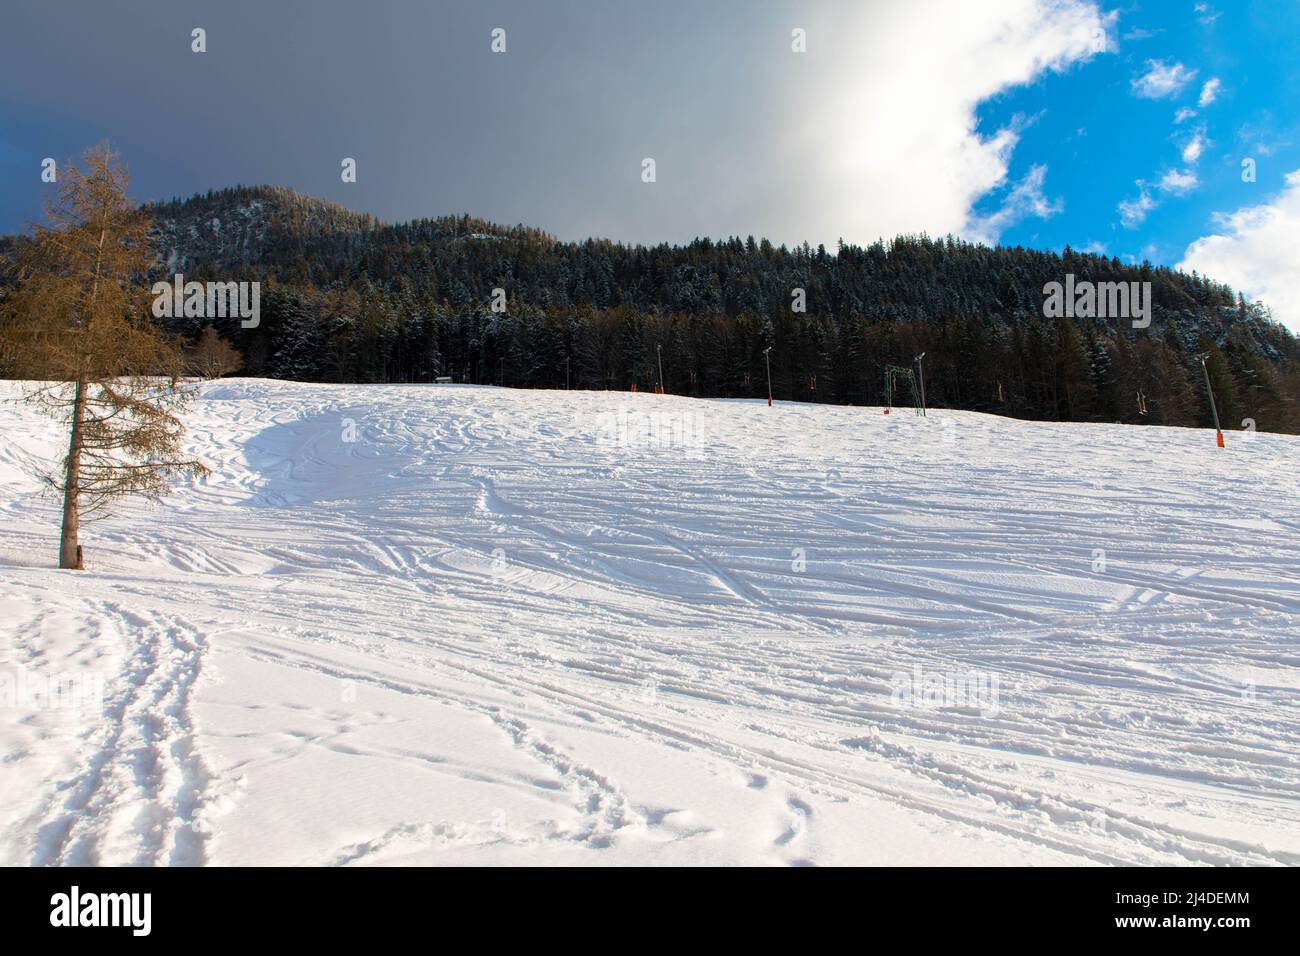 Wintertag im österreichischen Alpinskigebiet mit bewölktem Himmel und strahlend weißem Schnee. Steiermark, Oberösterreich Stockfoto